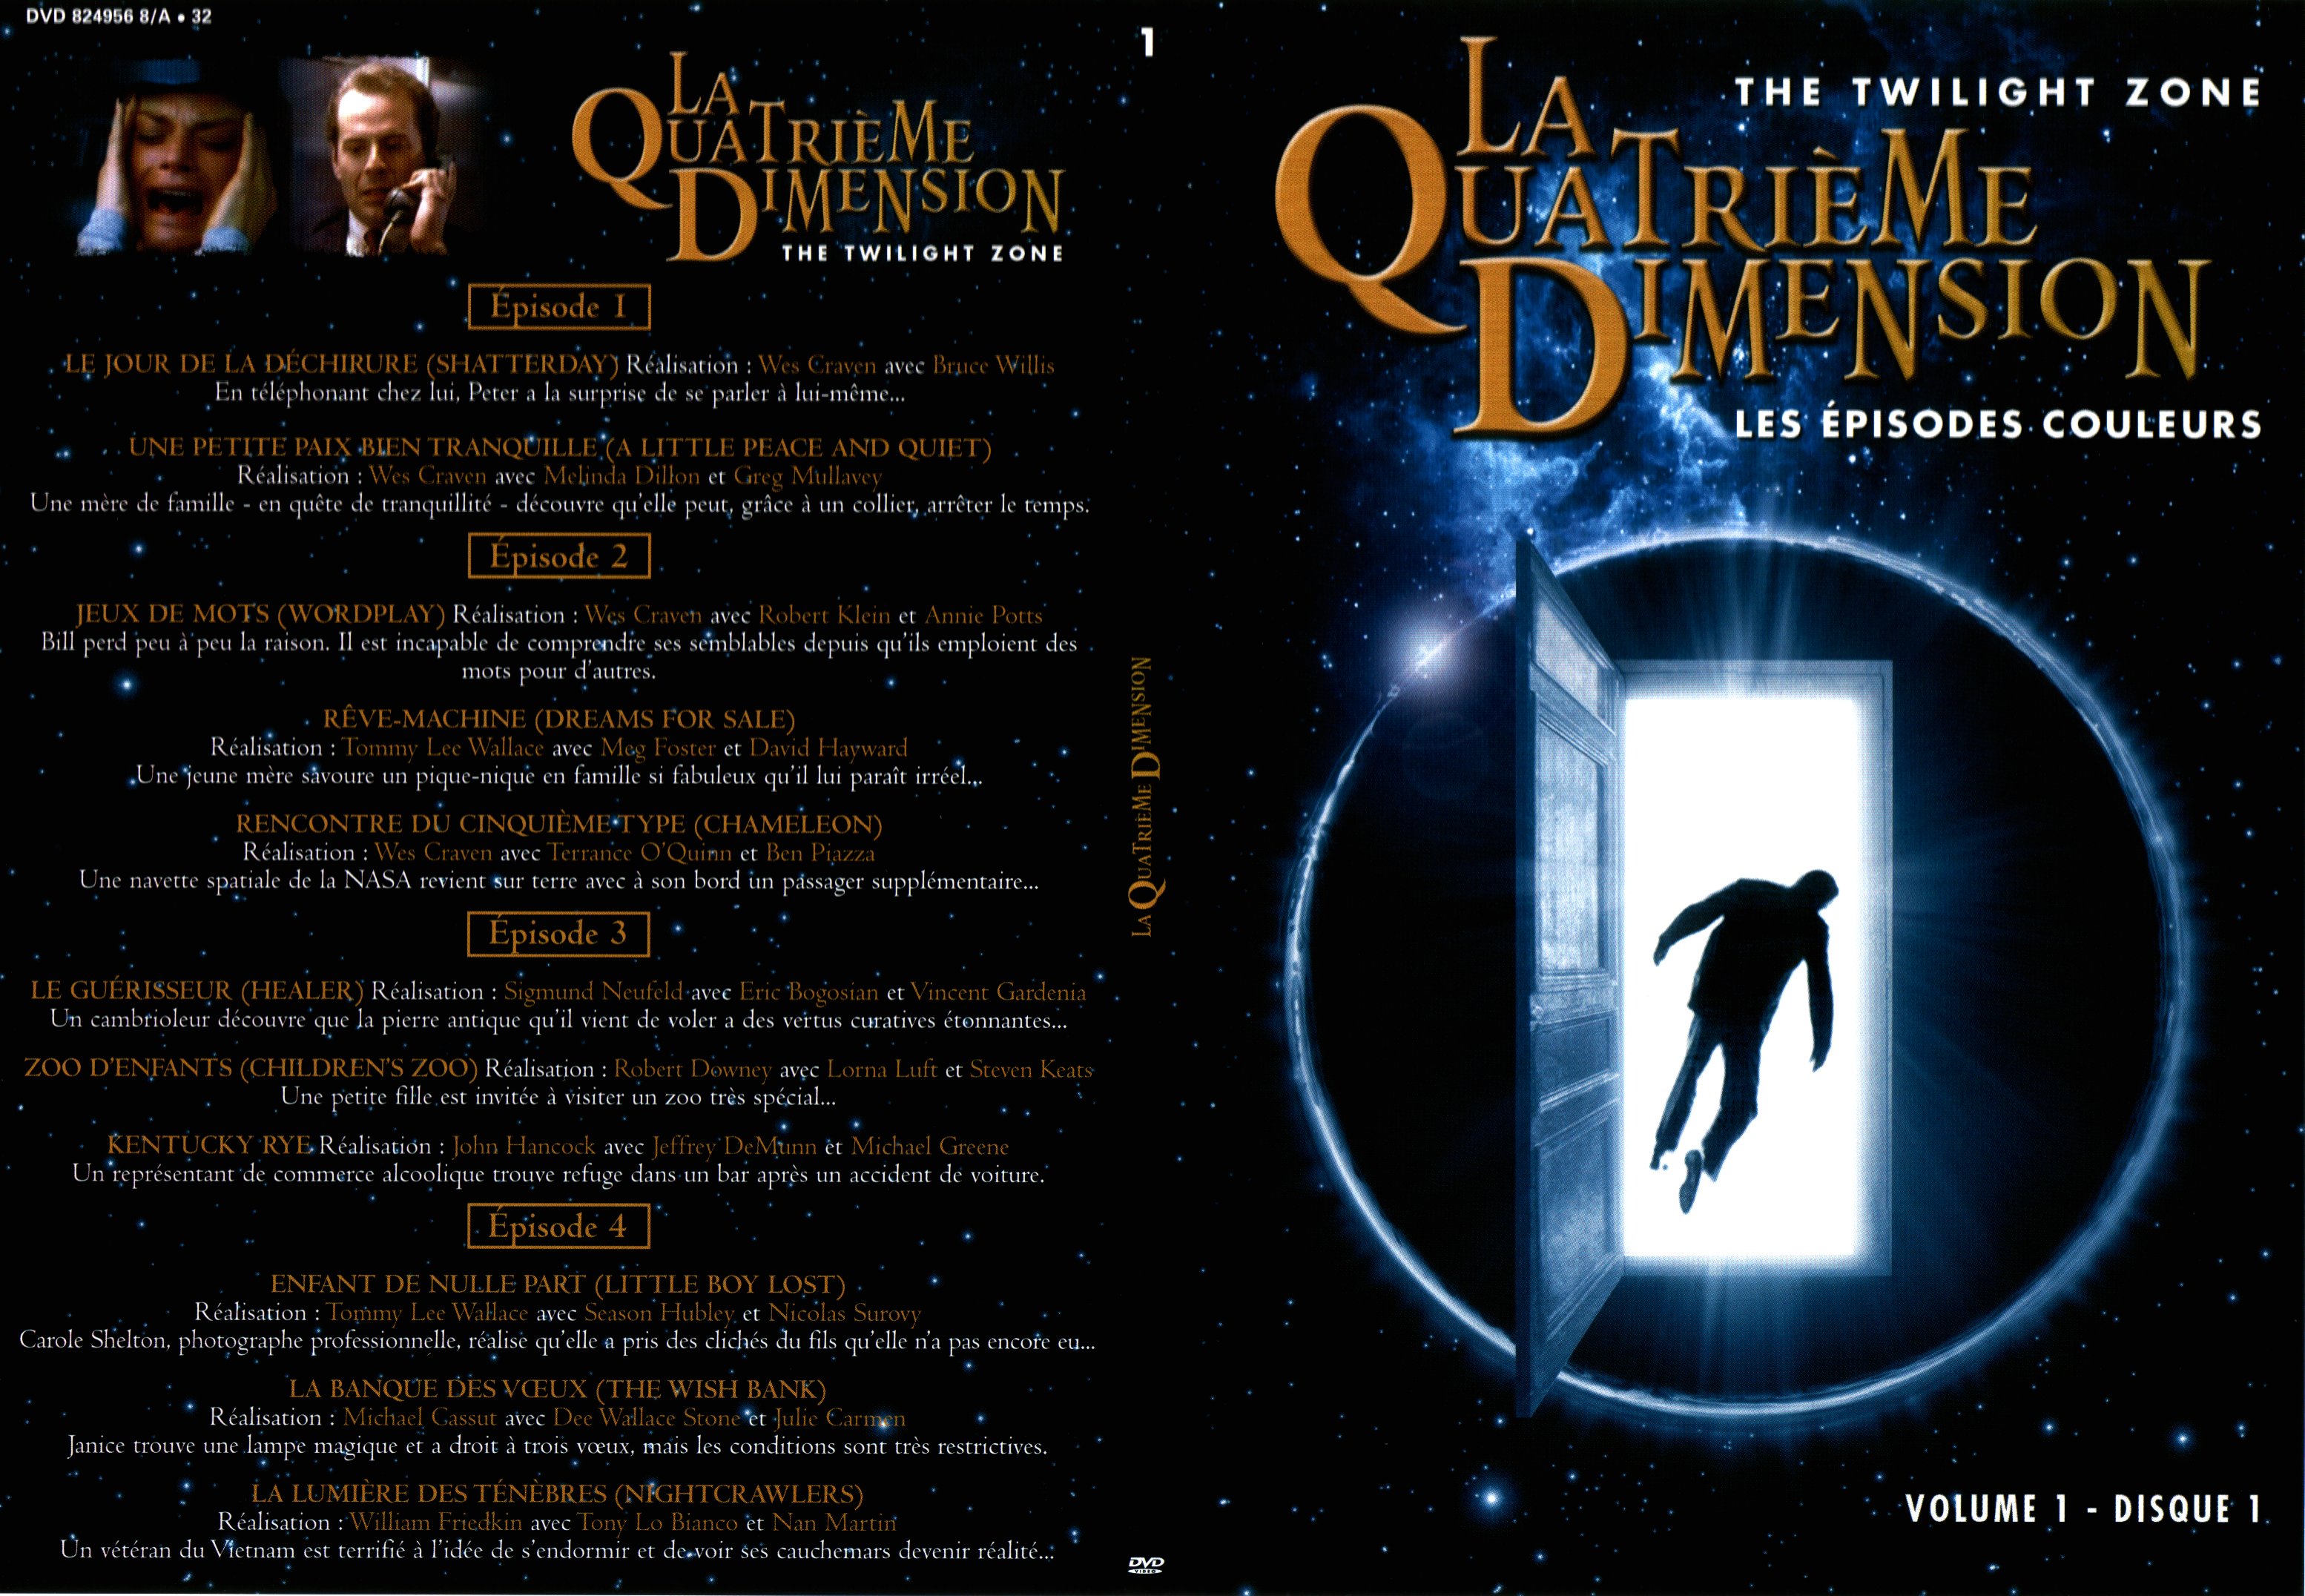 Jaquette DVD La quatrime dimension - Episodes couleurs vol 1 DVD 1